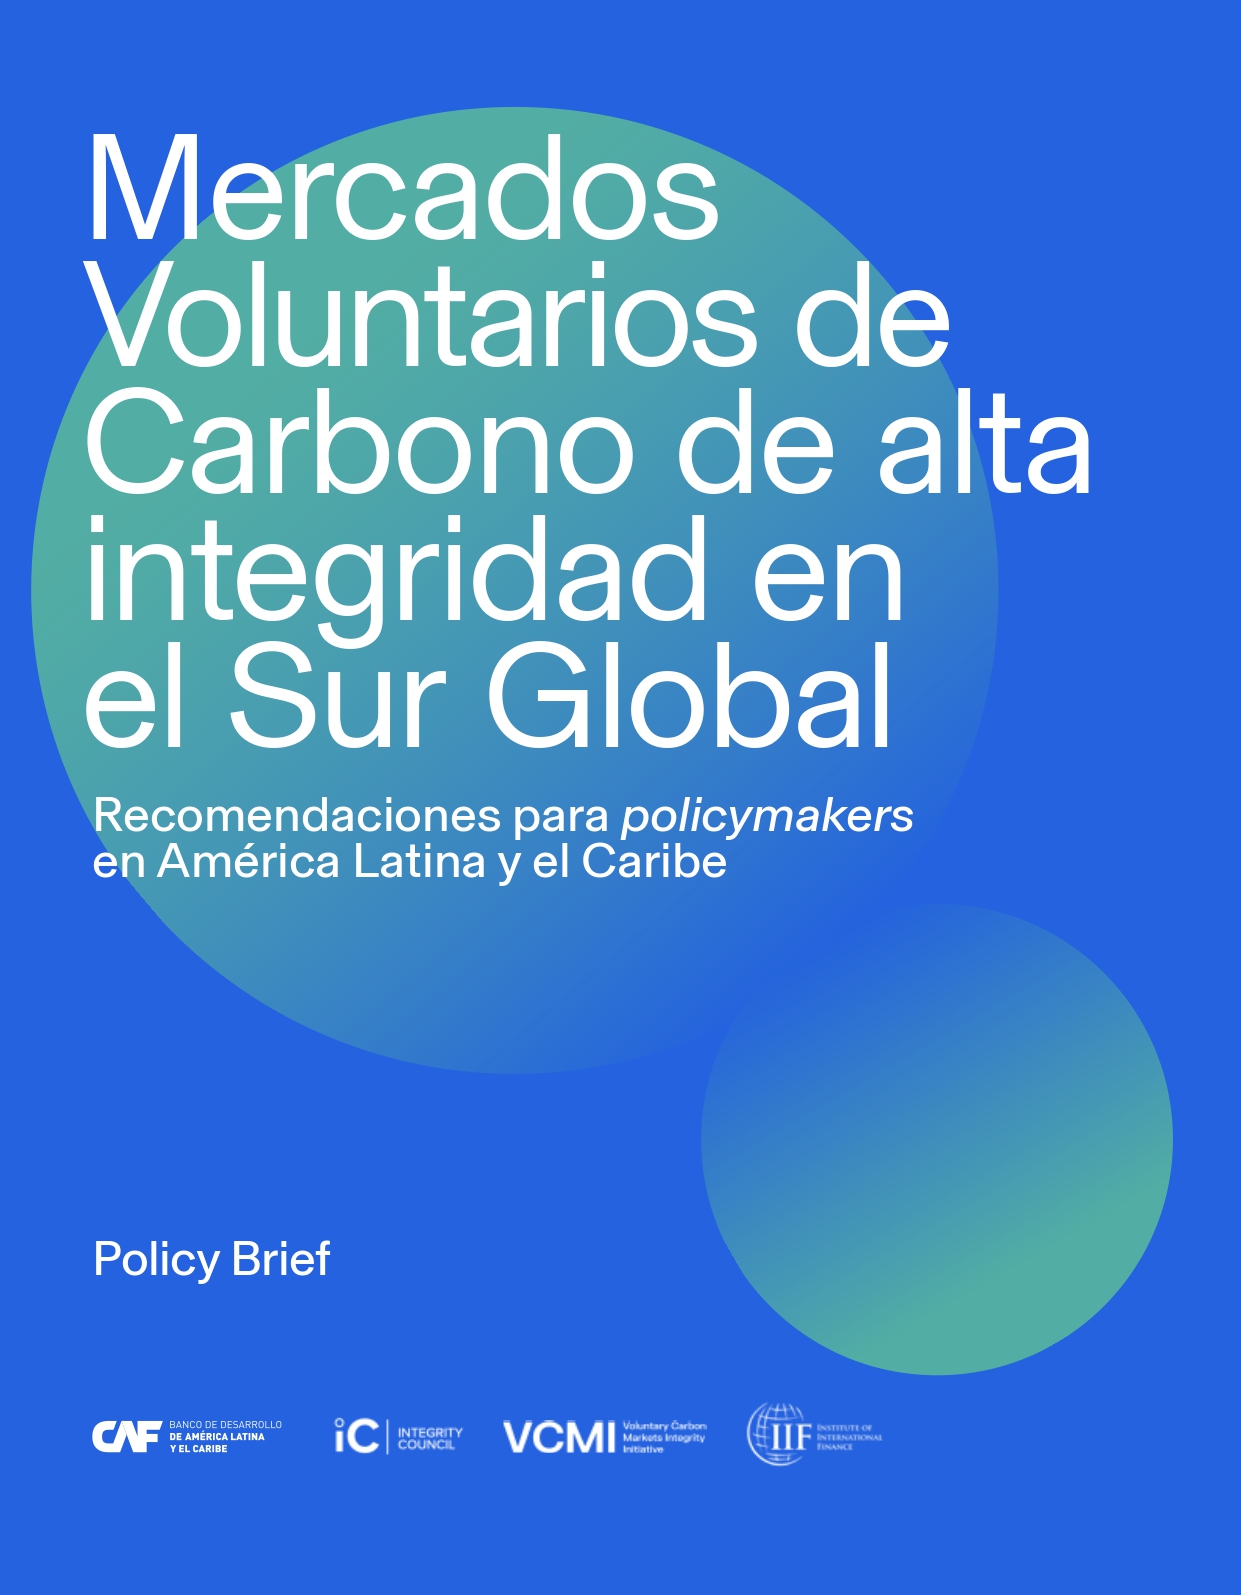 Mercados voluntarios de carbono de alta integridad en el sur global